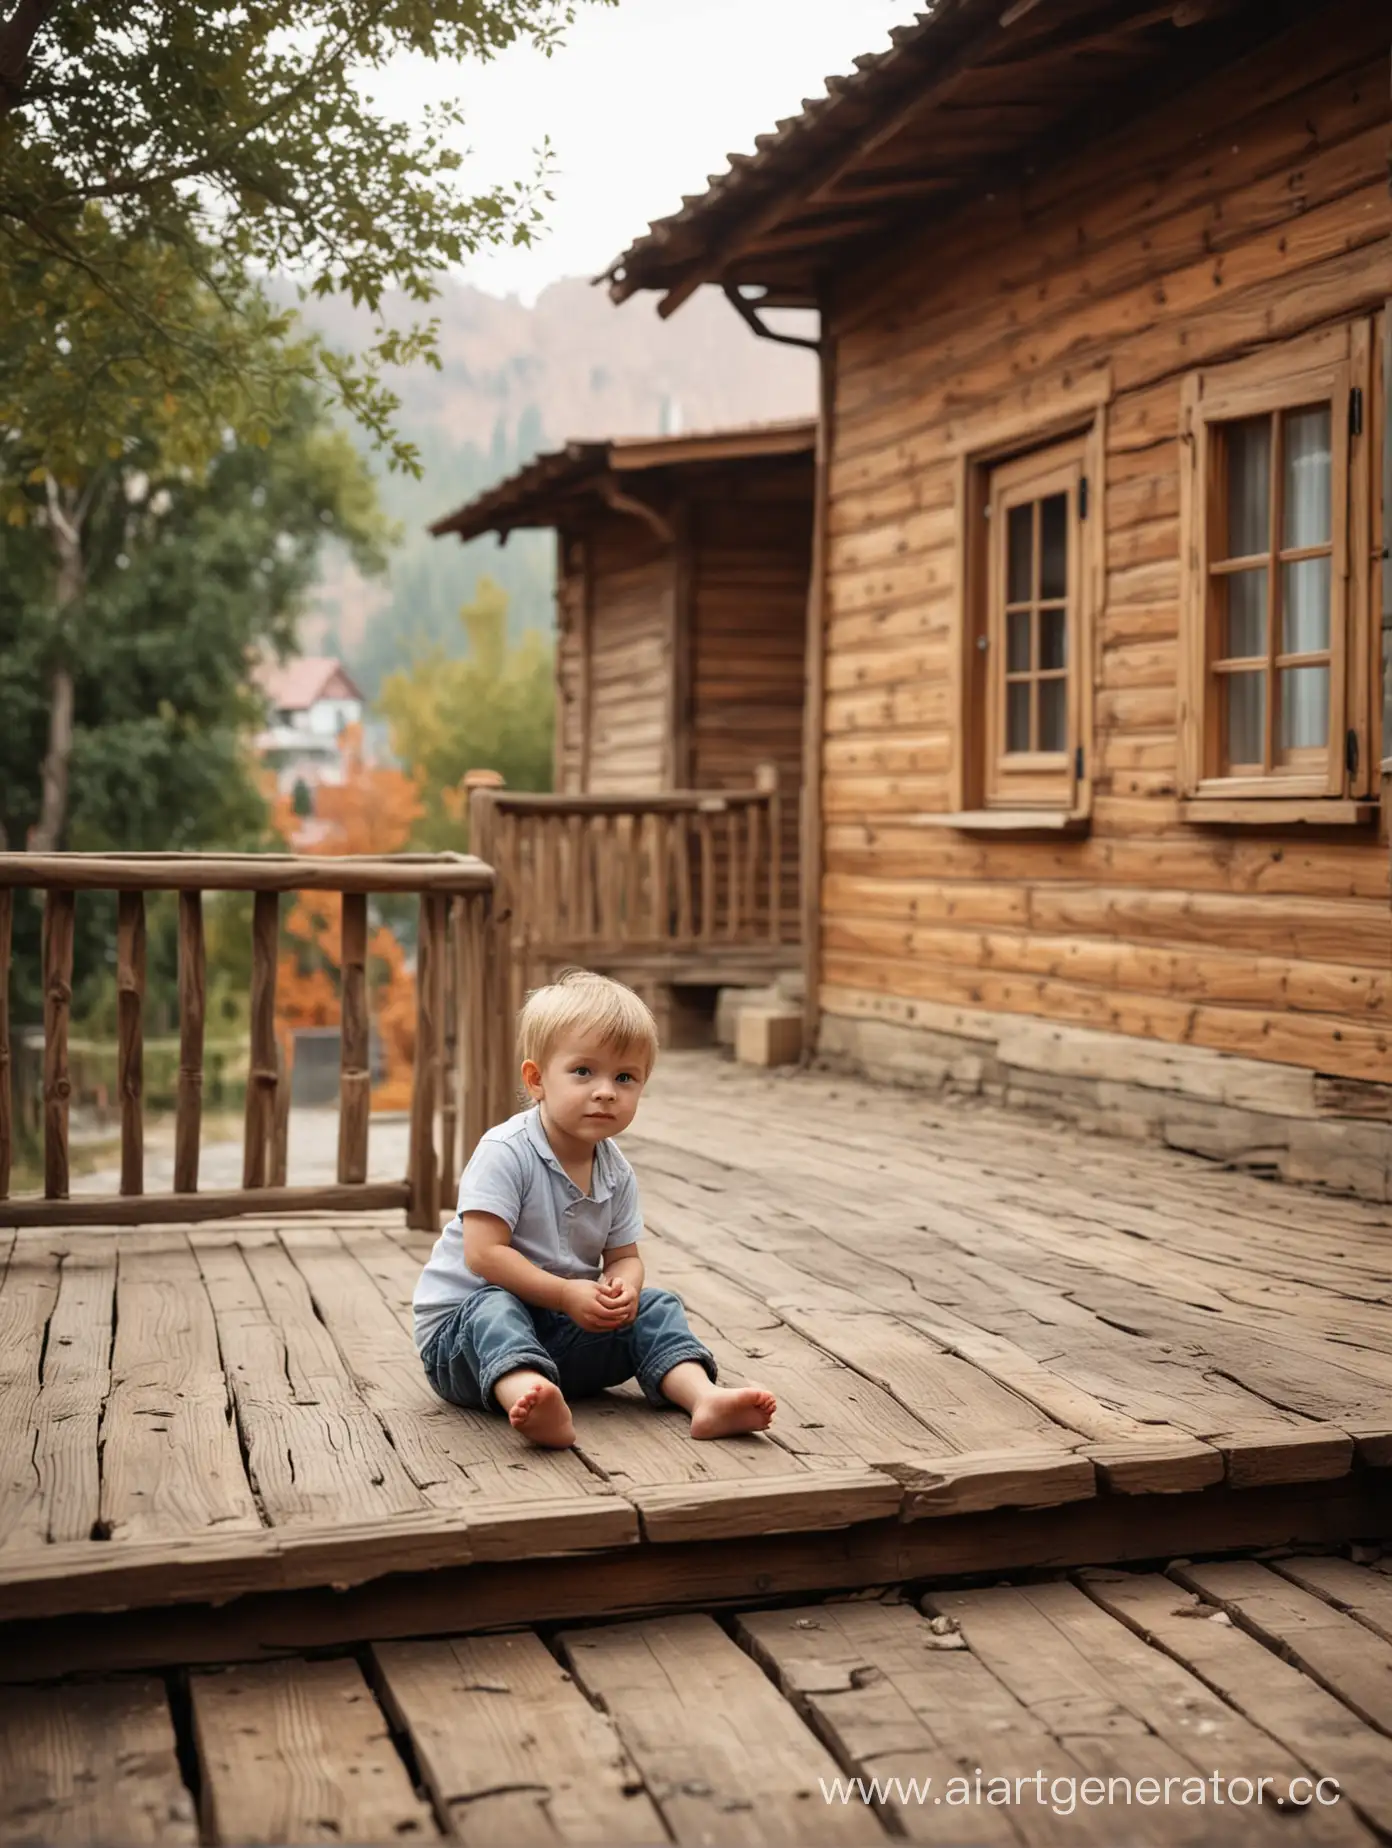 Маленький мальчик сидит на высокой террасе, на фоне деревянный домик, фон сильно размыт, очень реалистично